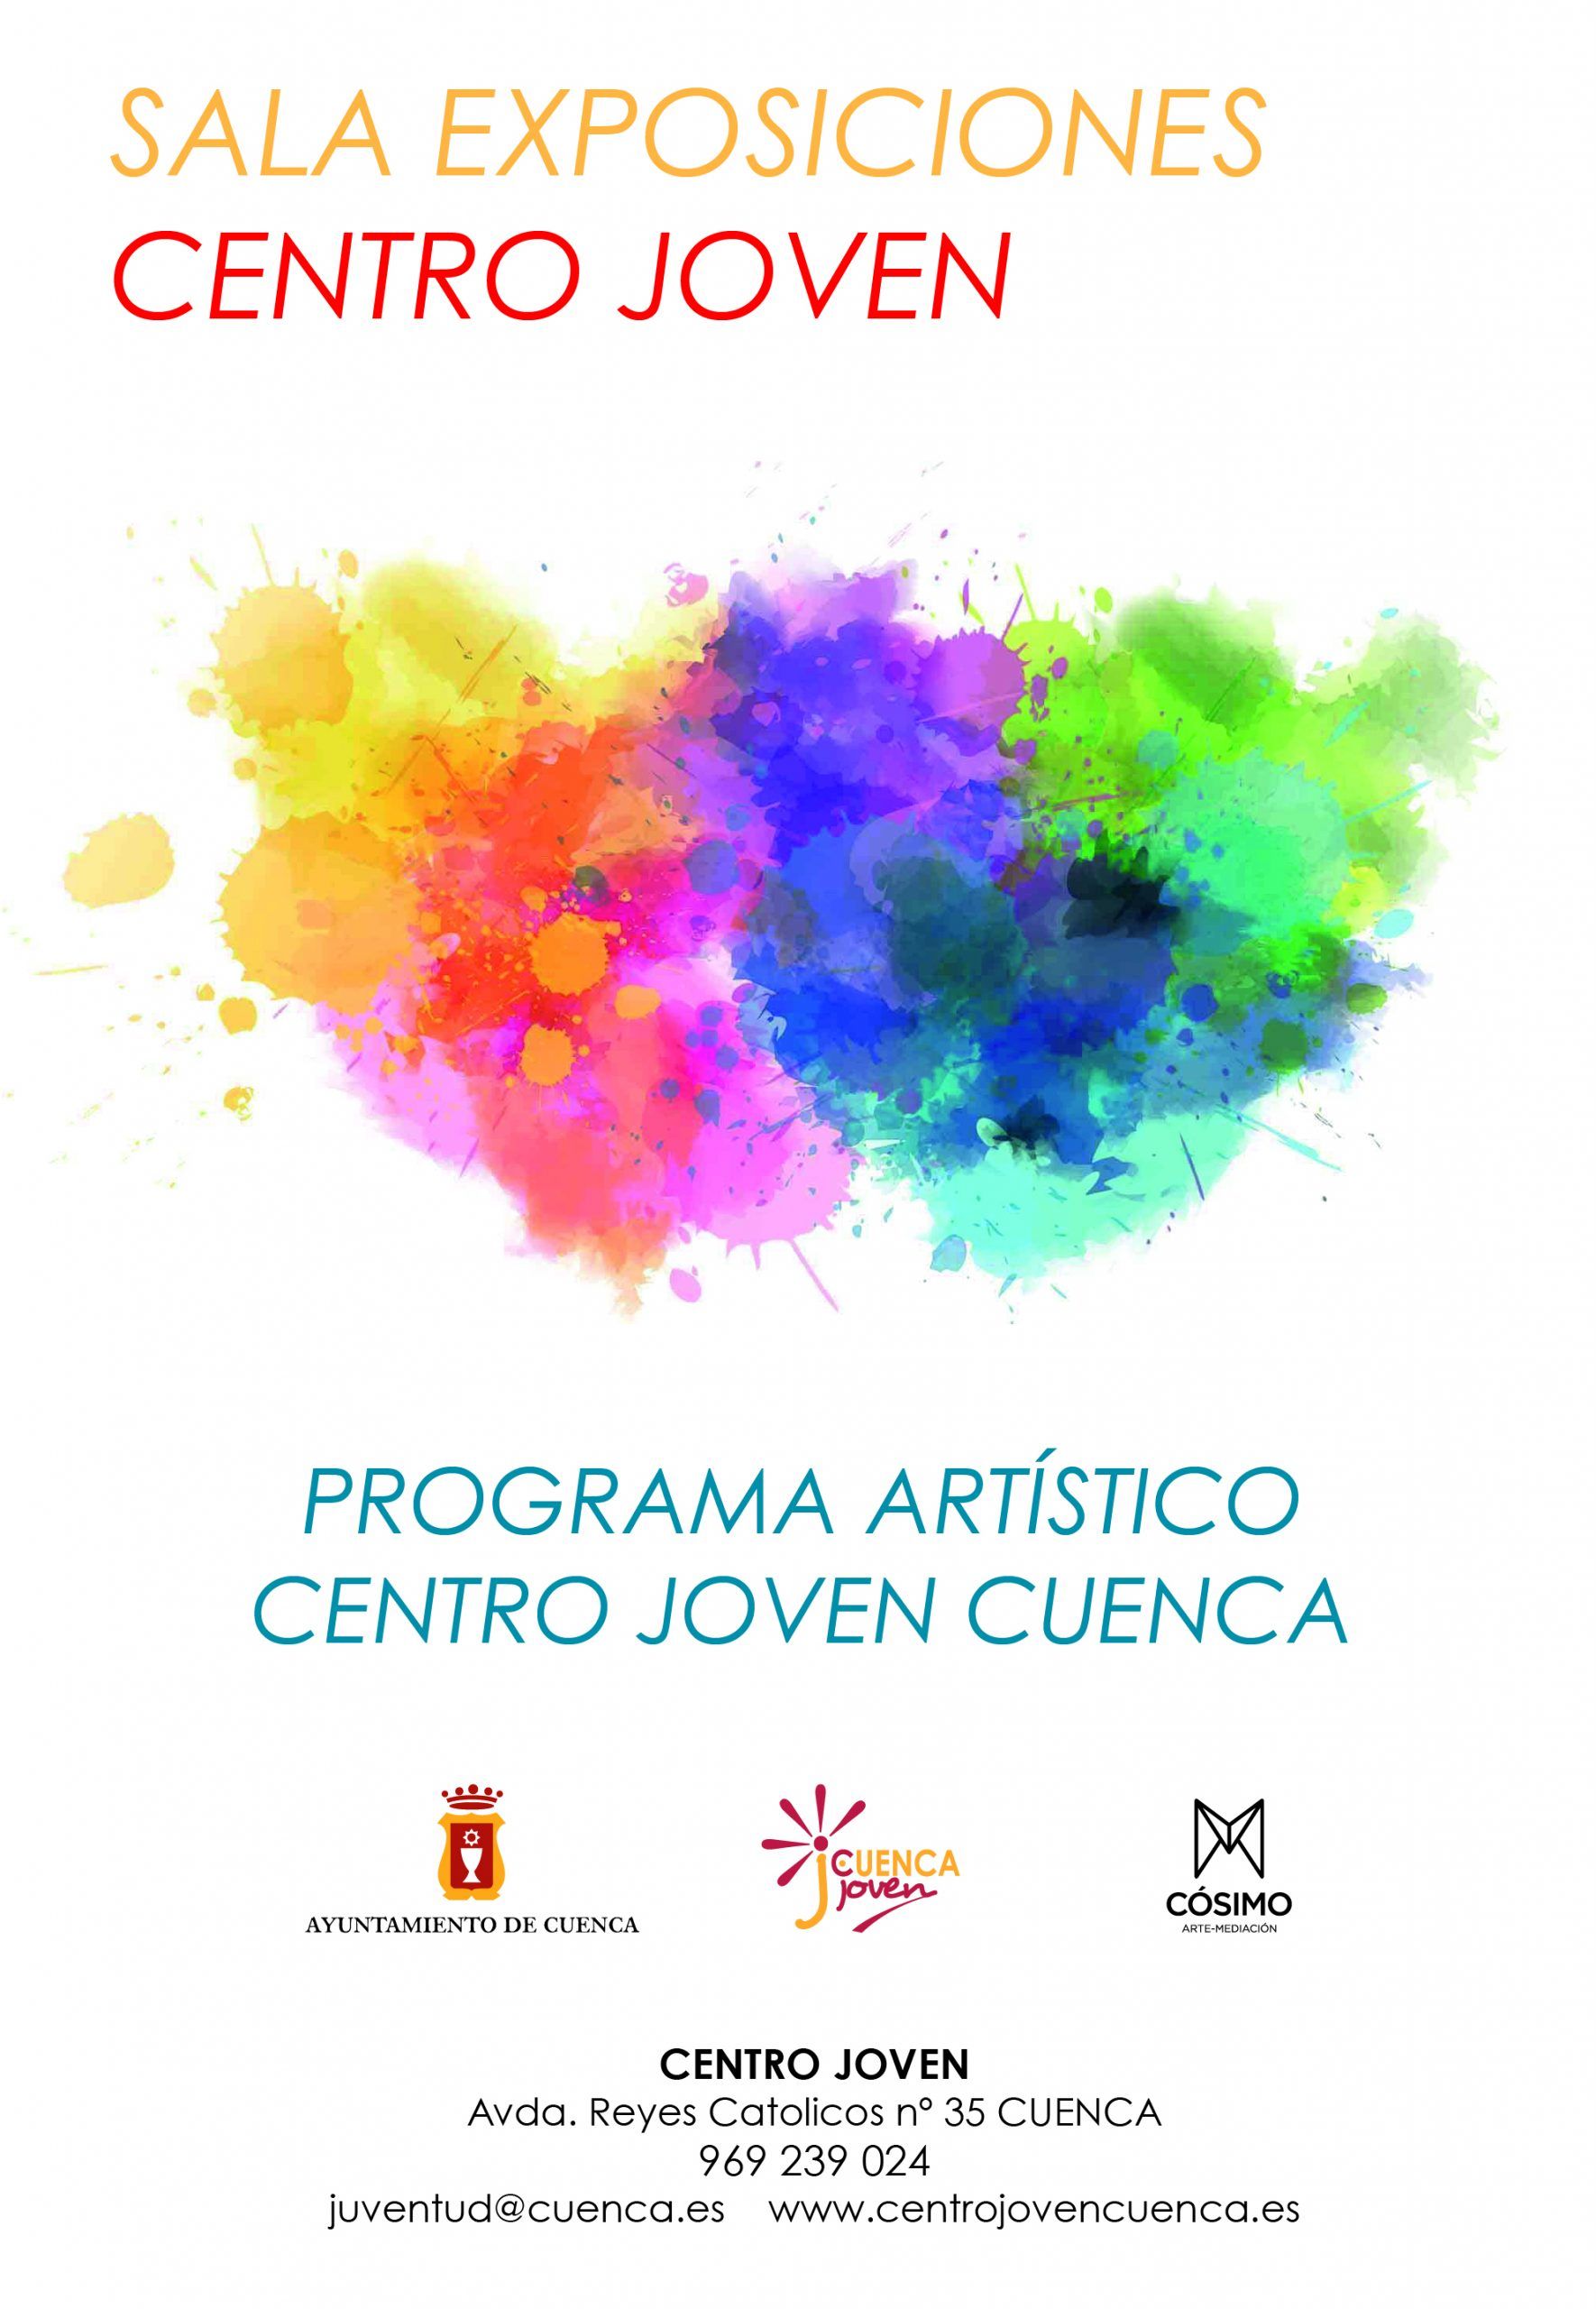 El Centro Joven de Cuenca pone en marcha un programa artístico destinado a iniciativas culturales y de difusión artística